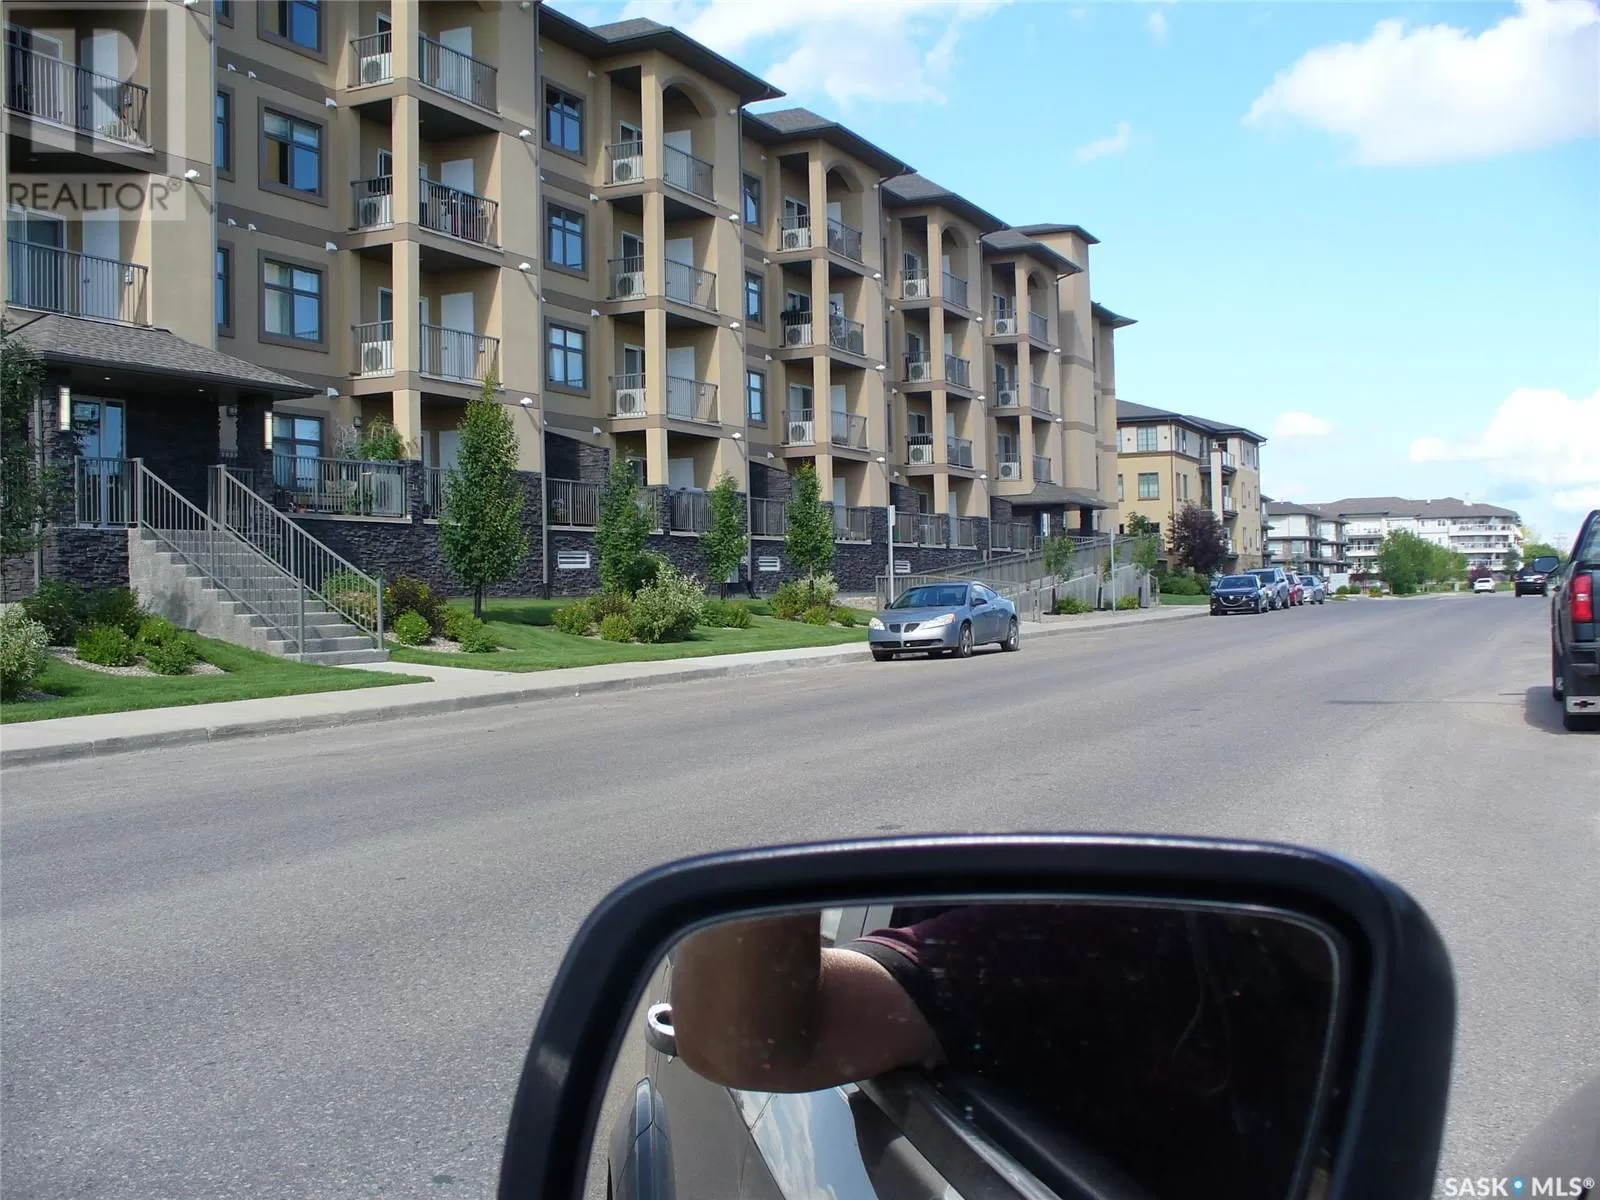 Apartment for rent: 217 3630 Haughton Road E, Regina, Saskatchewan S4V 1P1